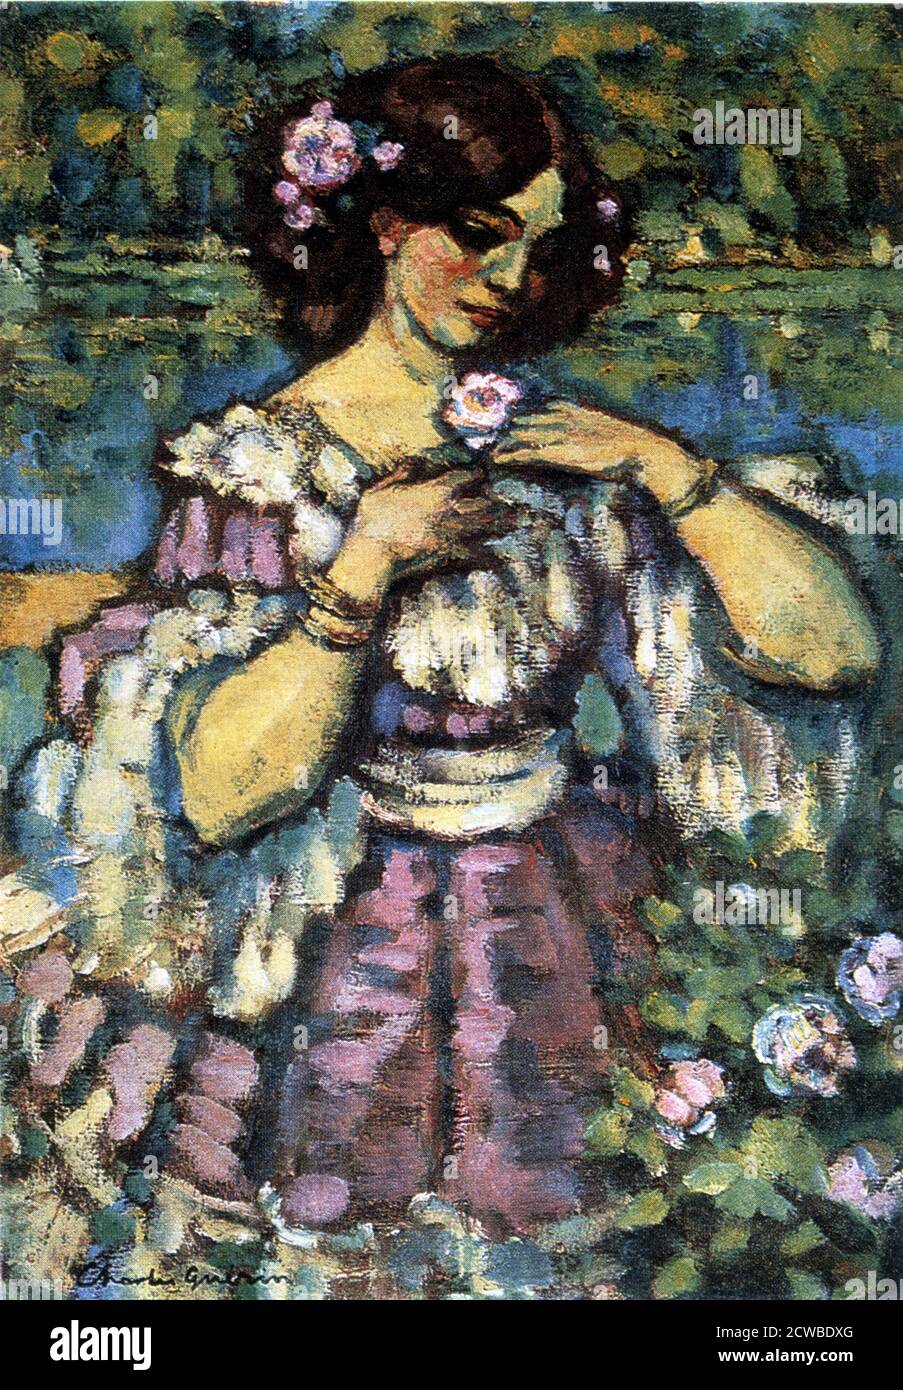 Femme avec Rose', 1901 artiste: Charles Guerin. En tant qu'admirateur de Monet et Renoir, Charles François Prosper Guerin a pris la technique des impressionnistes et l'a appliquée dans son propre style, avec une utilisation inhabituelle et originale de la couleur. Banque D'Images